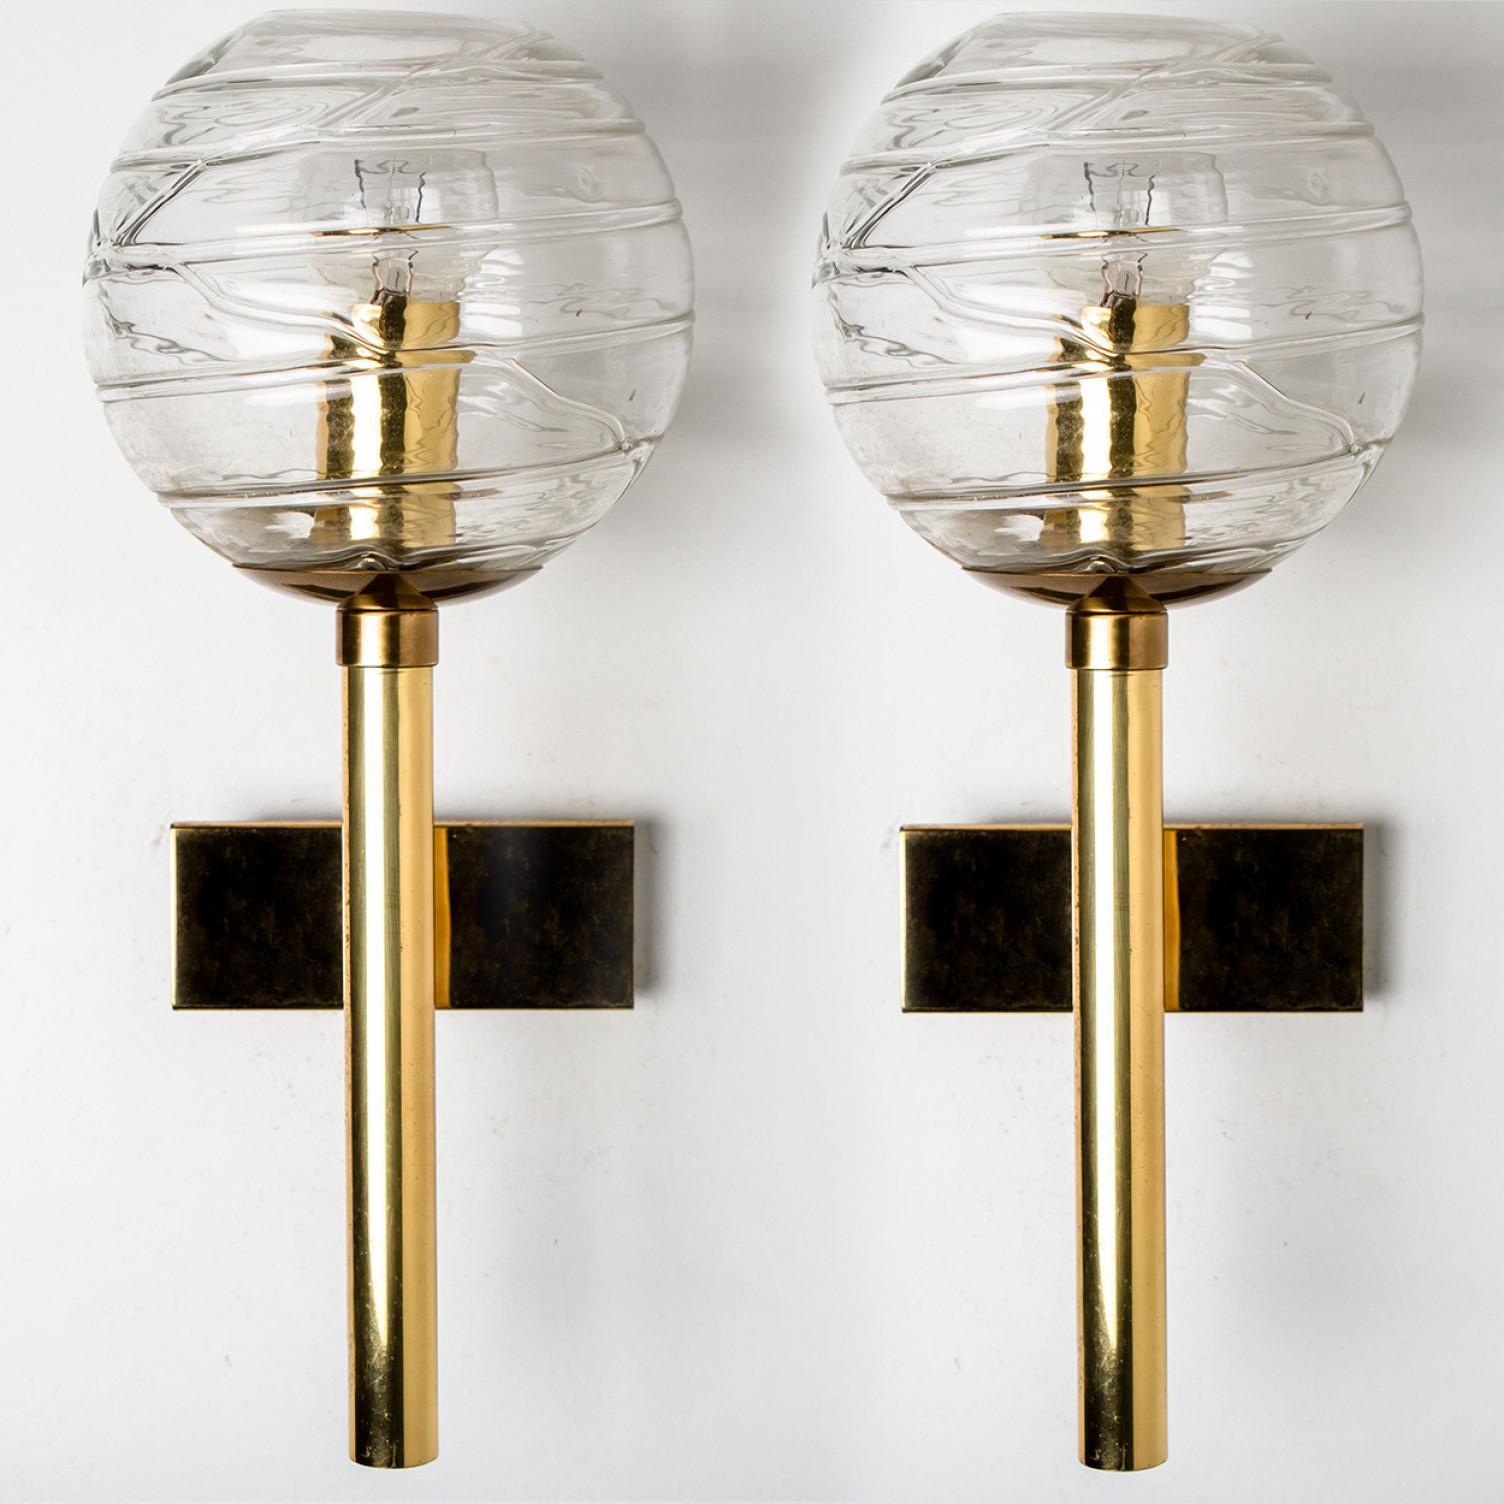 Ein Paar Doria-Wandleuchten (in Collaboration mit Murano) im Stil von Venini, um 1960 hergestellt.
Hochwertiger, dicker Murano-Kristallglasschirm aus überfangenem, klarem Glas, das in unregelmäßigen Wirbeln aufgetragen ist. Aufsehenerregender